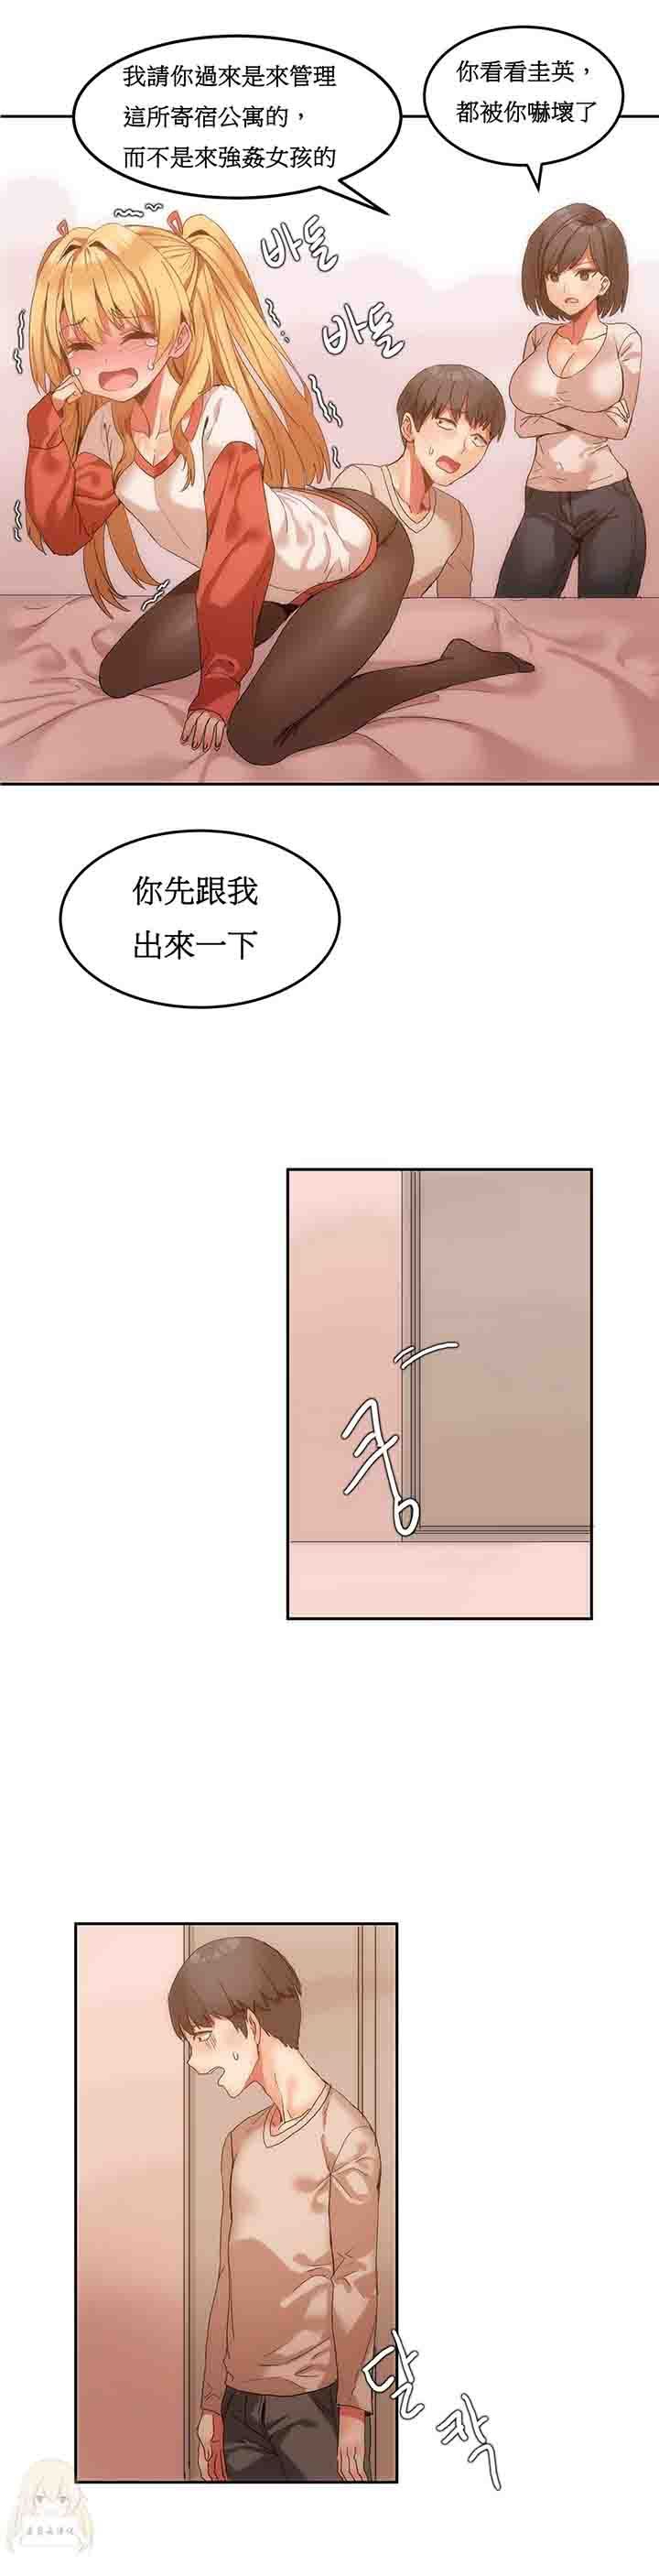 韩国污漫画 寄宿公寓-陰氣之洞 第7话 7